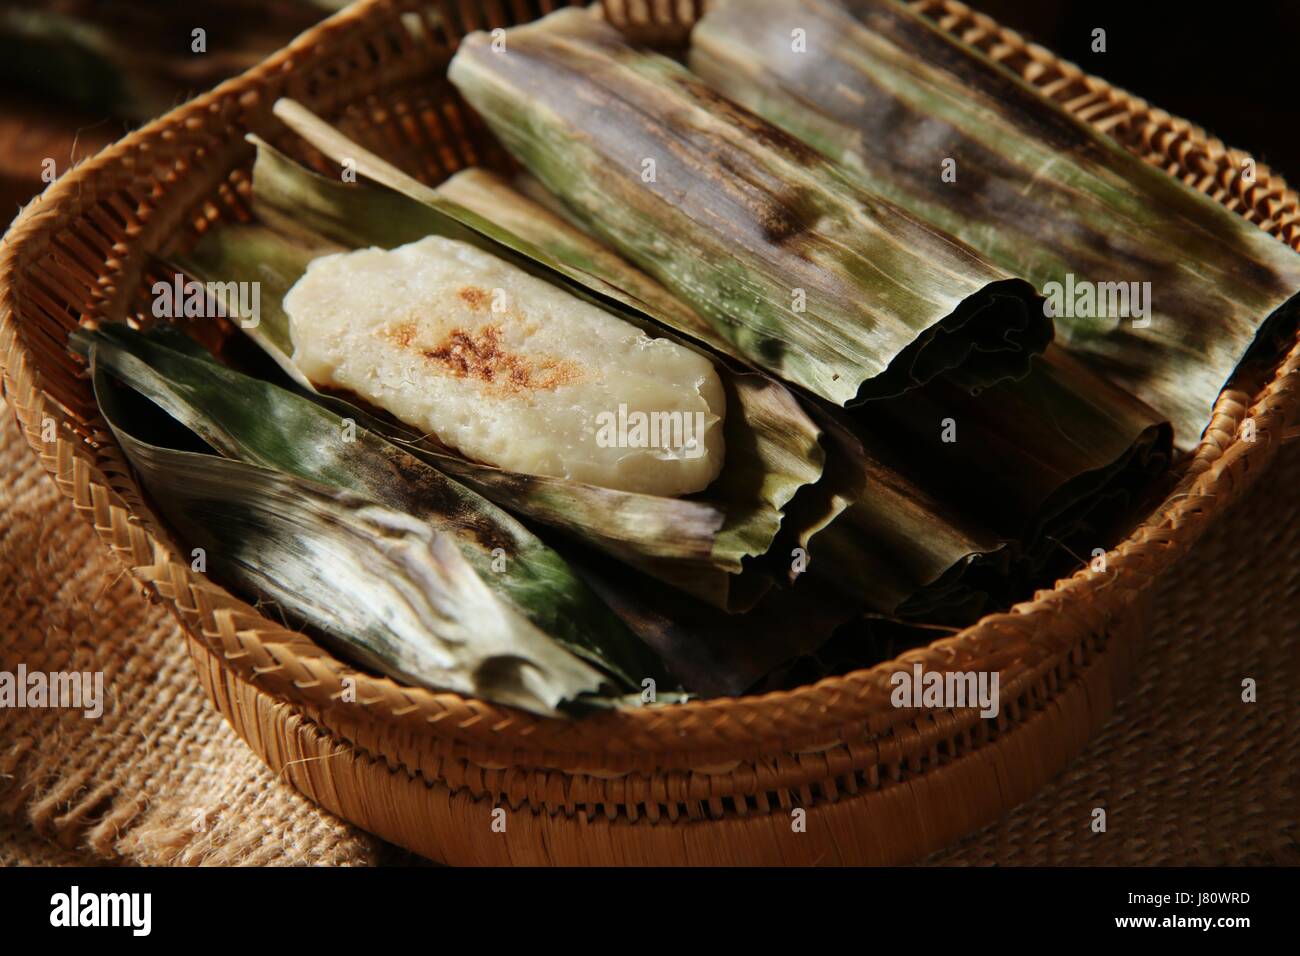 Otak-Otak, indonesische Fischfrikadellen in Bananenblätter eingewickelt. Ein beliebter Snack in Jakarta. Stockfoto